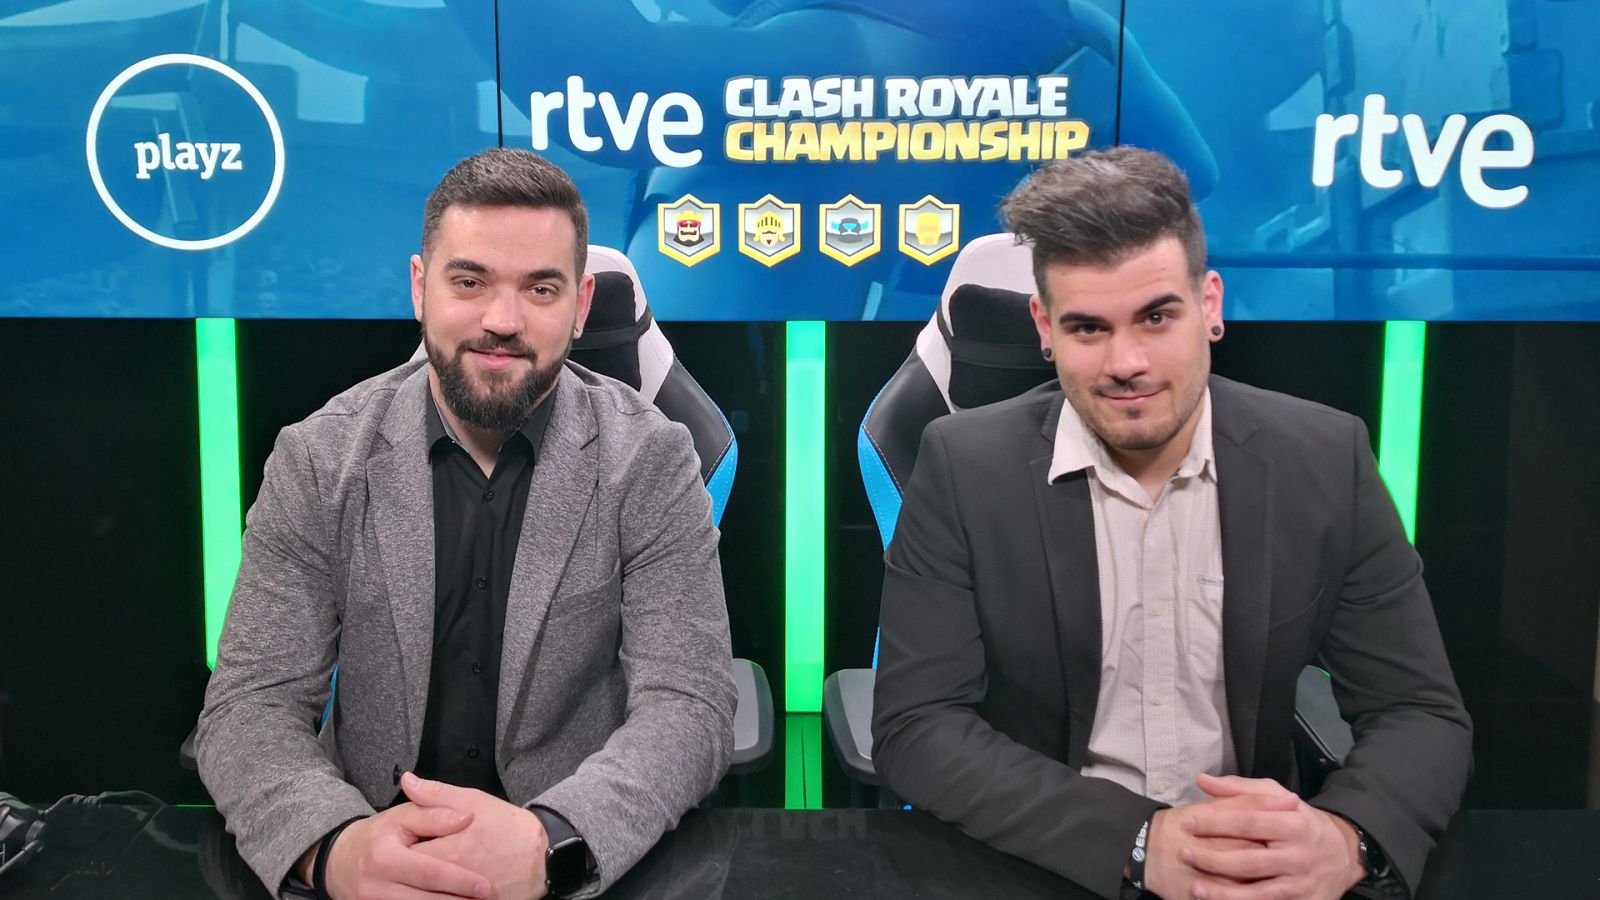 Seniki y Álex polo, 'casters' de RTVE Clash Royale Championship